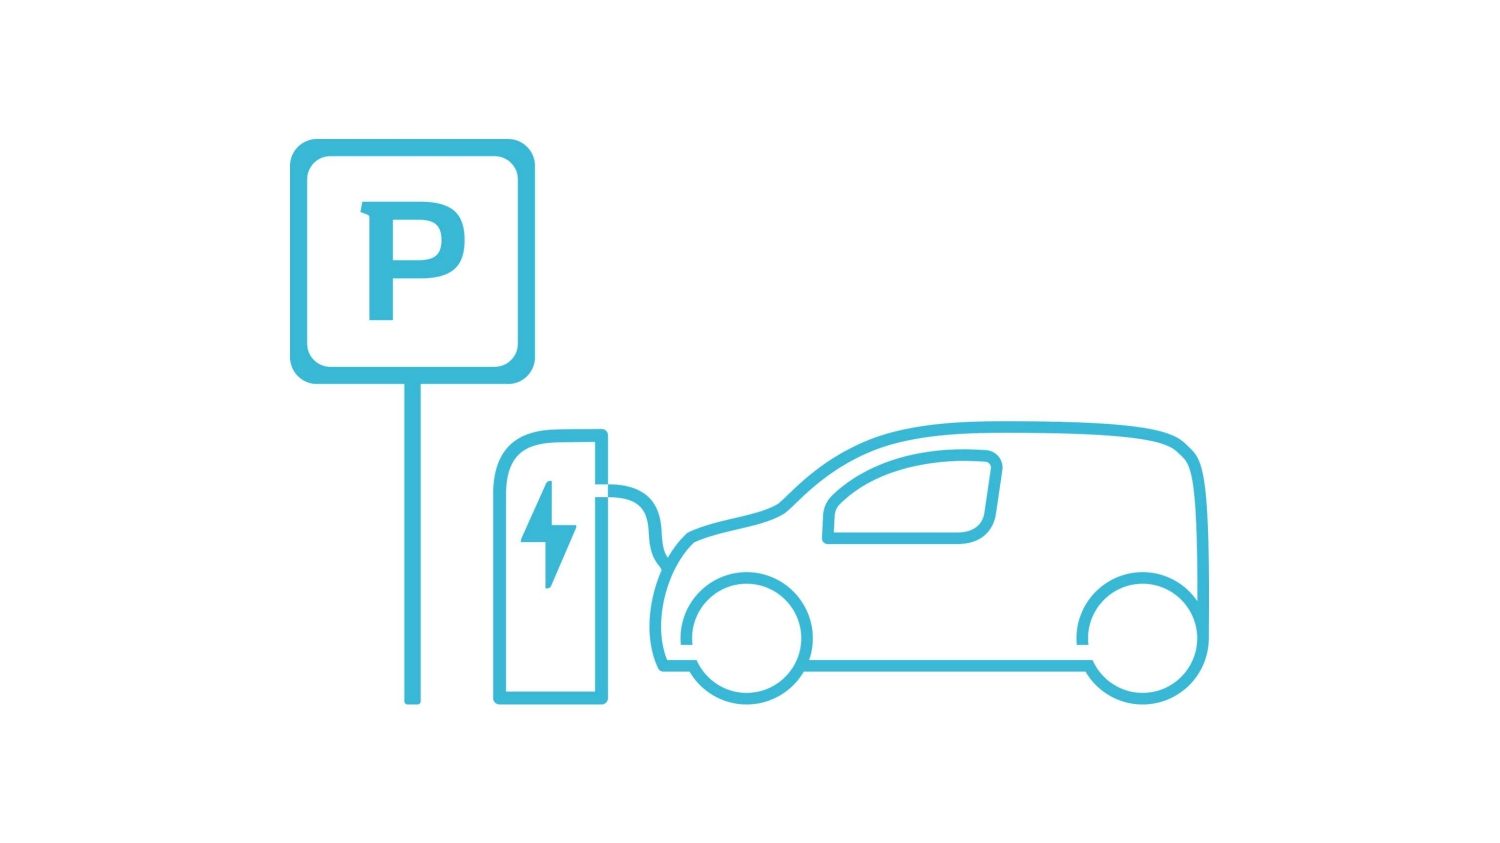 Borne de recharge véhicules électriques